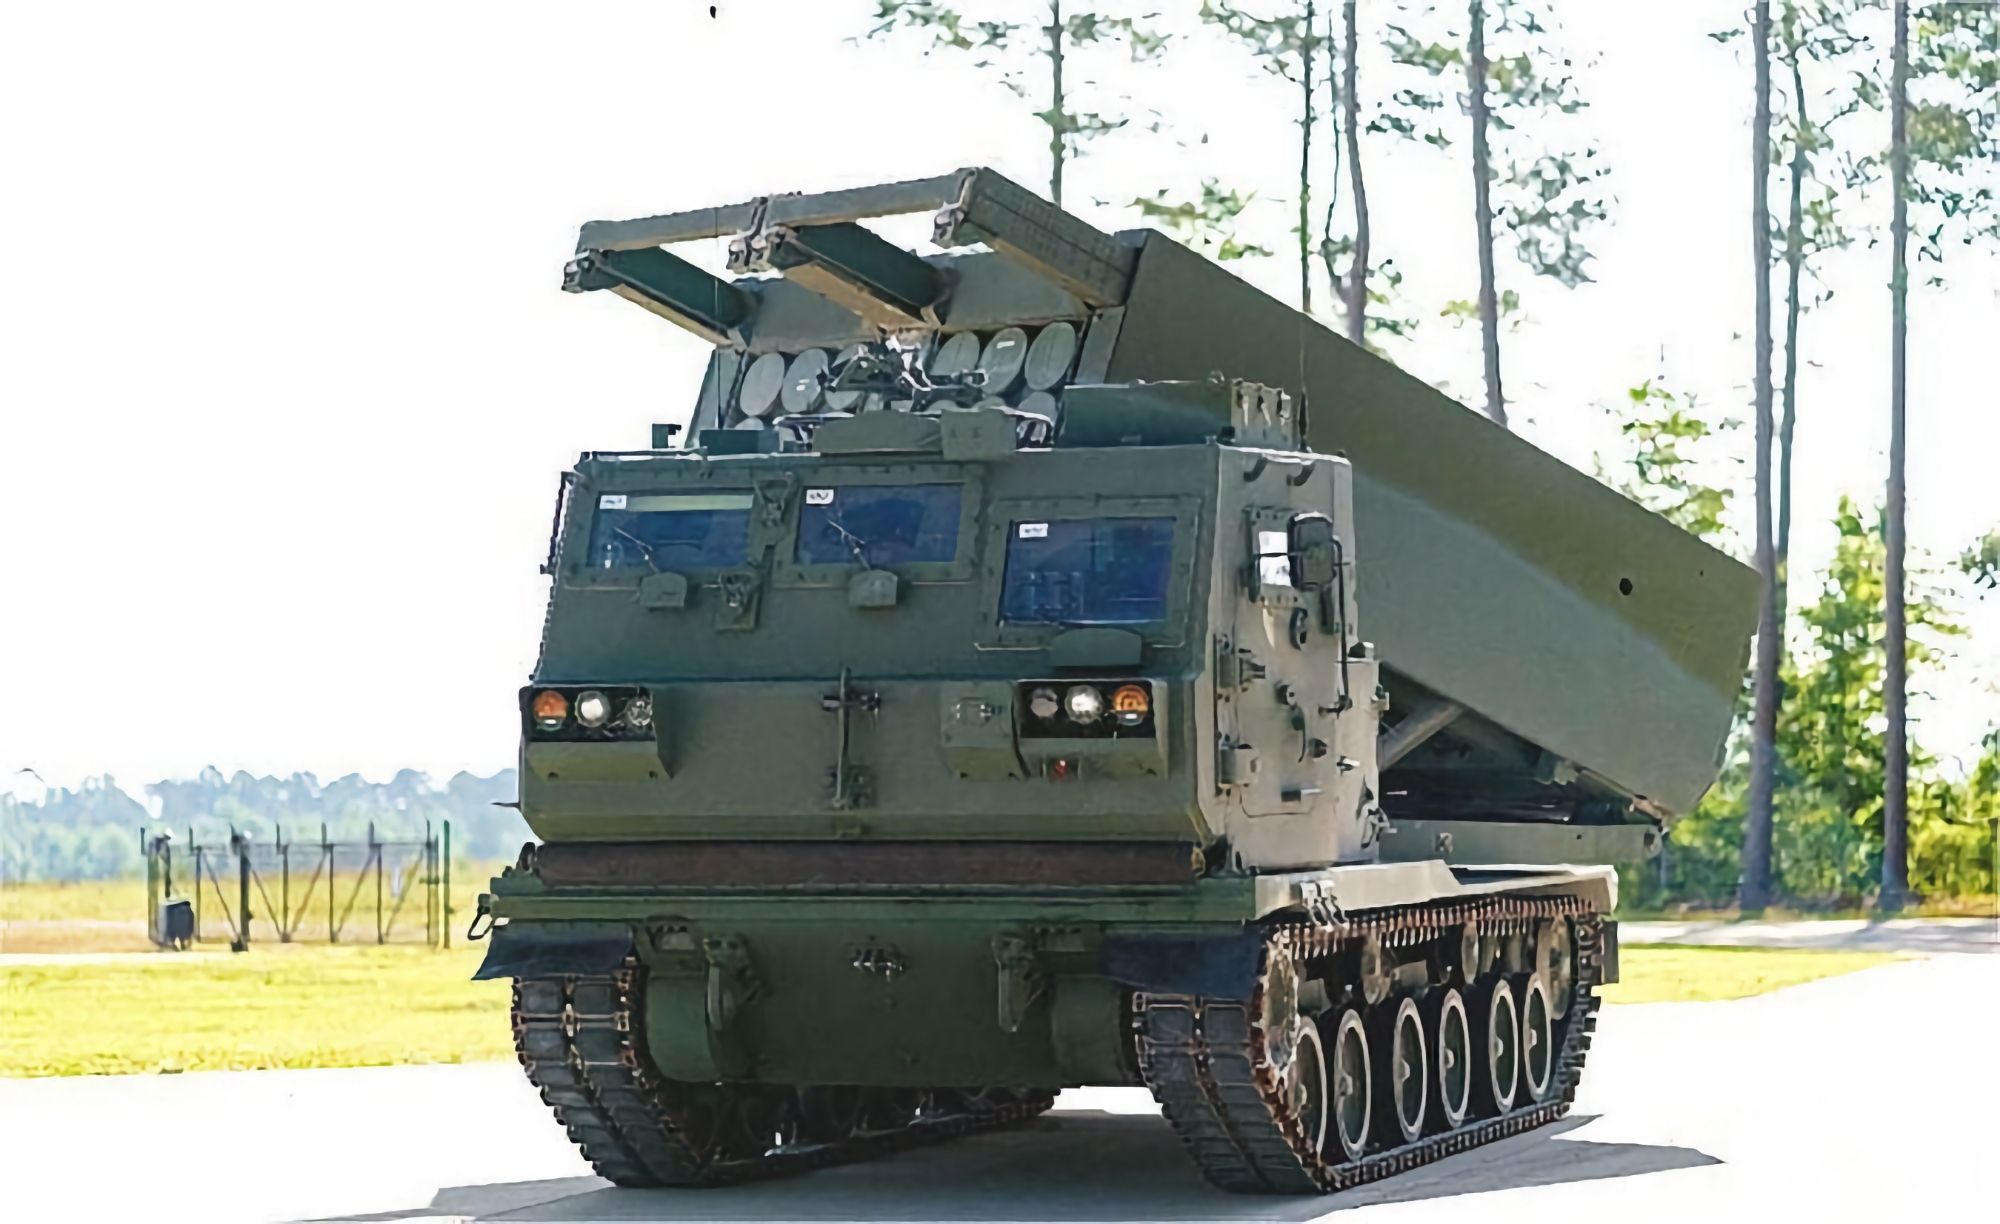 Die USA haben Lockheed Martin beauftragt, weitere M270-Mehrfachraketenwerfer aufzurüsten, die PrSM-Raketen mit einer Reichweite von 500 Kilometern abschießen können.